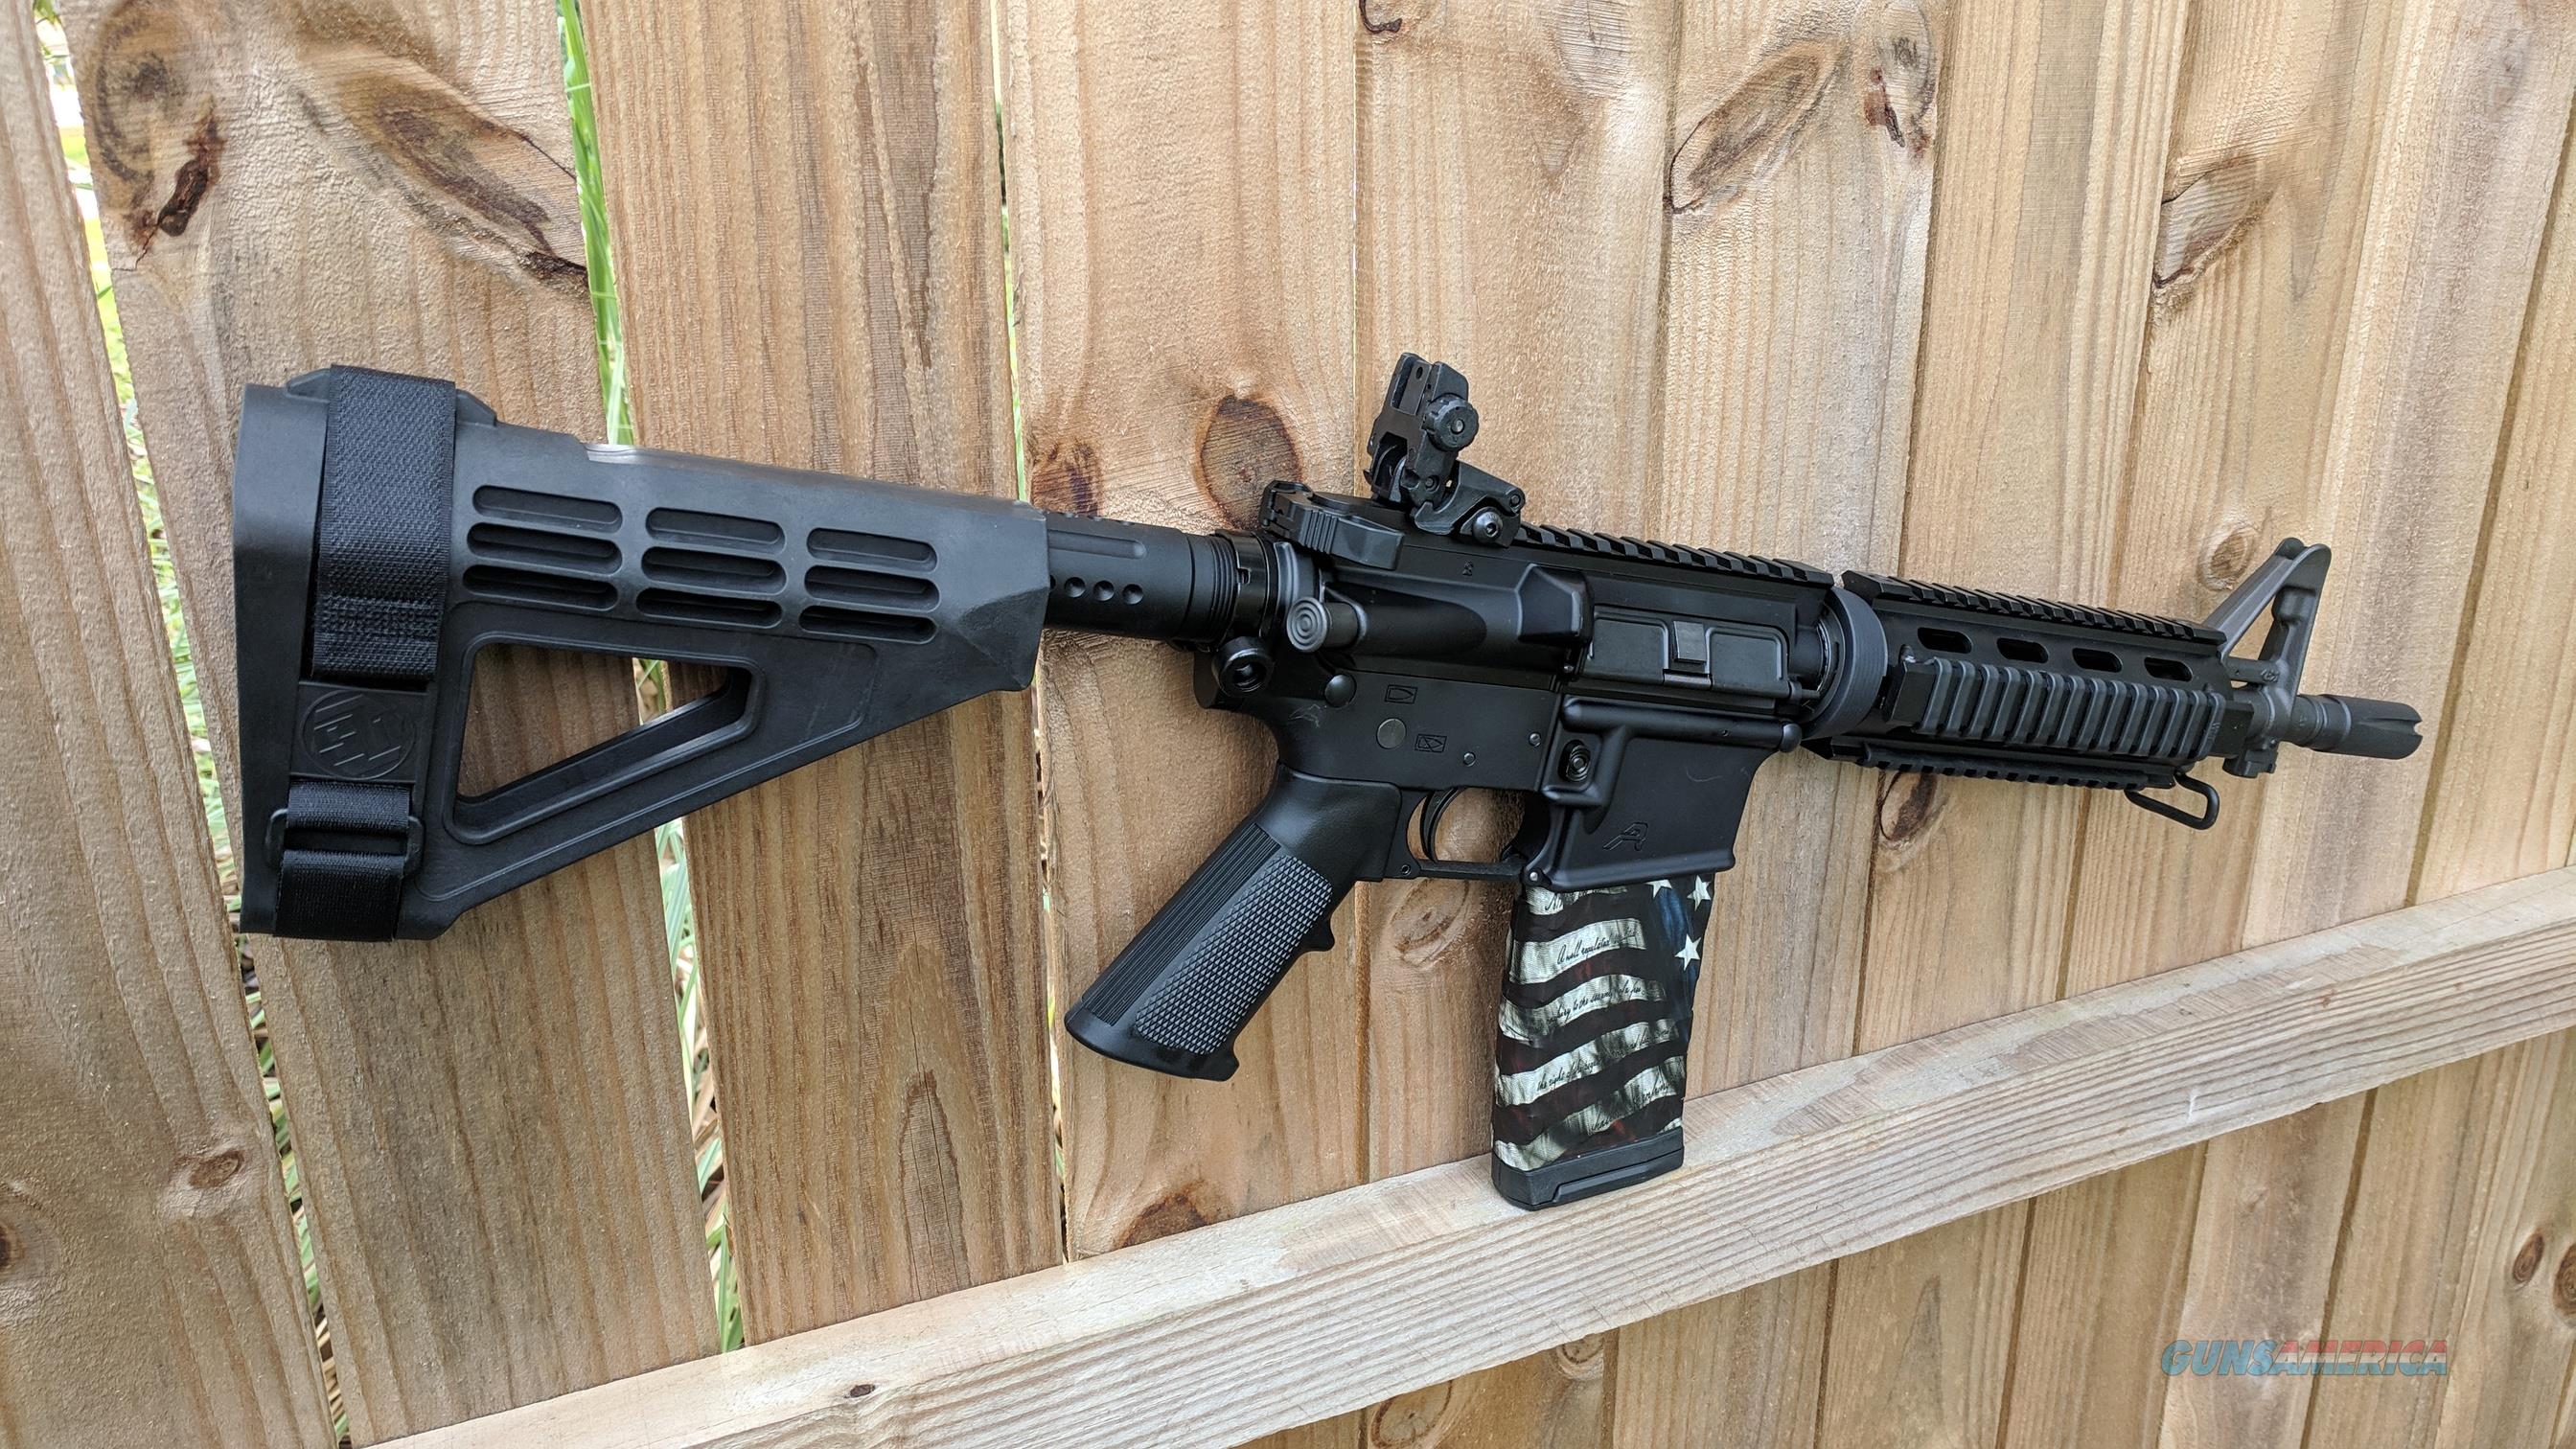 Illinois Lawmaker Looks To Ban AR-15, 'Ghost Guns' | NPR Illinois